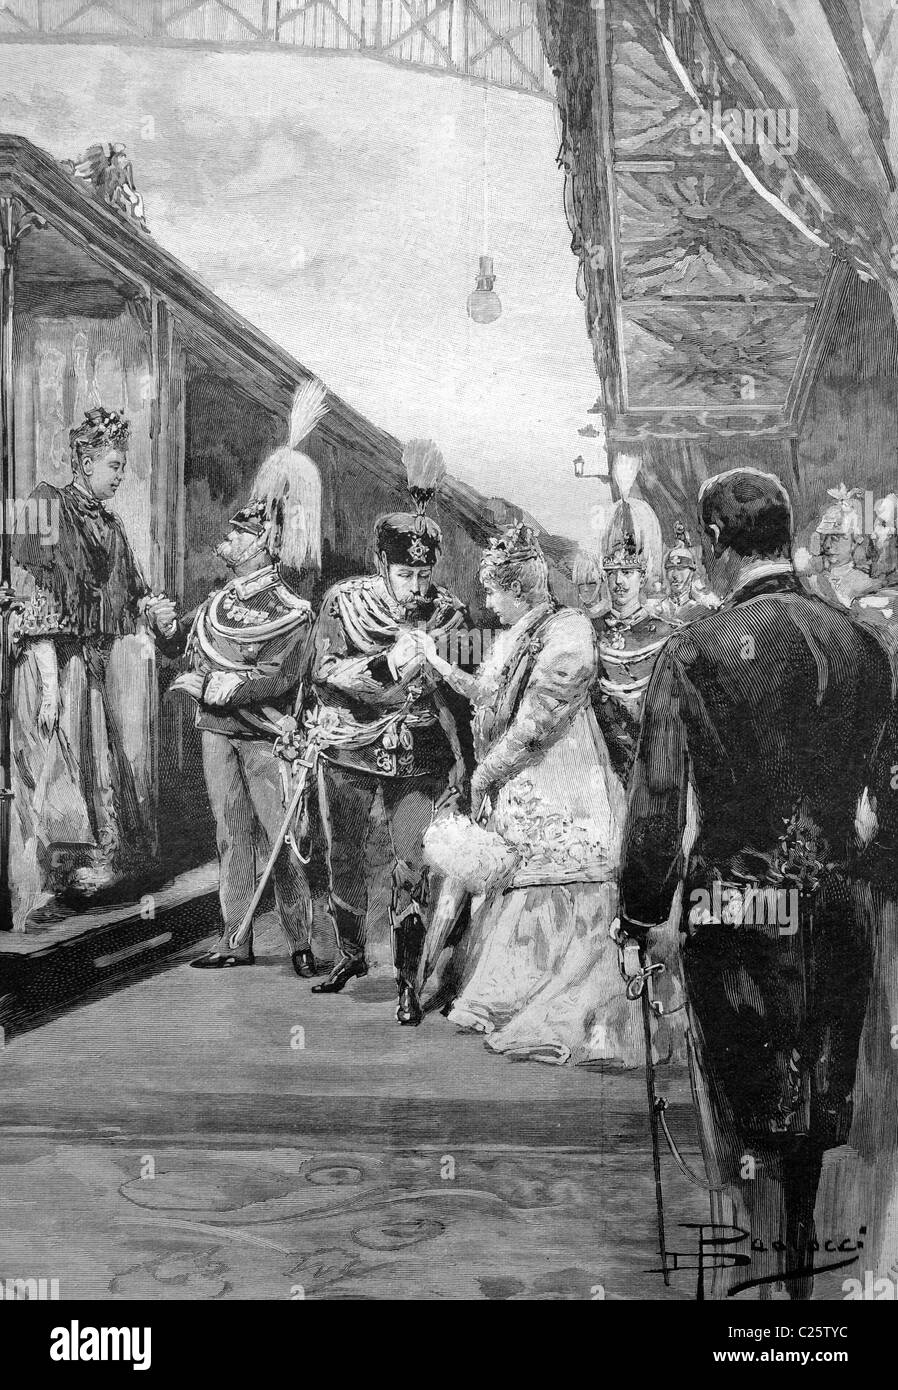 Visita del Emperador y la Emperatriz alemana de Roma, en la estación de recepción, ilustración histórica circa 1893 Foto de stock